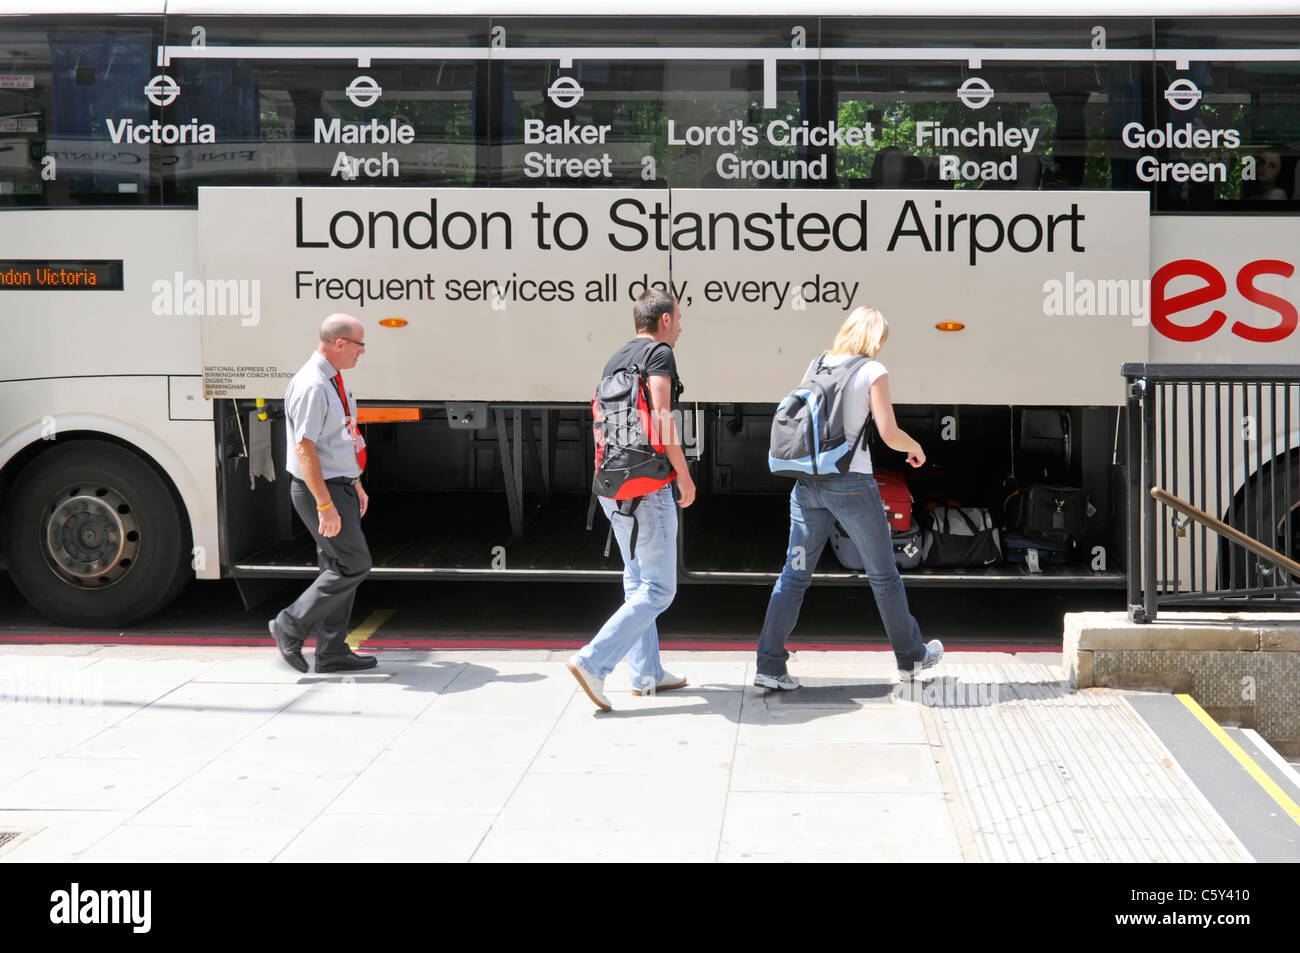 National Express öffentliche Verkehrsmittel Bus Fahrer betreut Passagiere Gepäck sammeln Koffer Ankunft in London vom Flughafen Stansted England Großbritannien Stockfoto